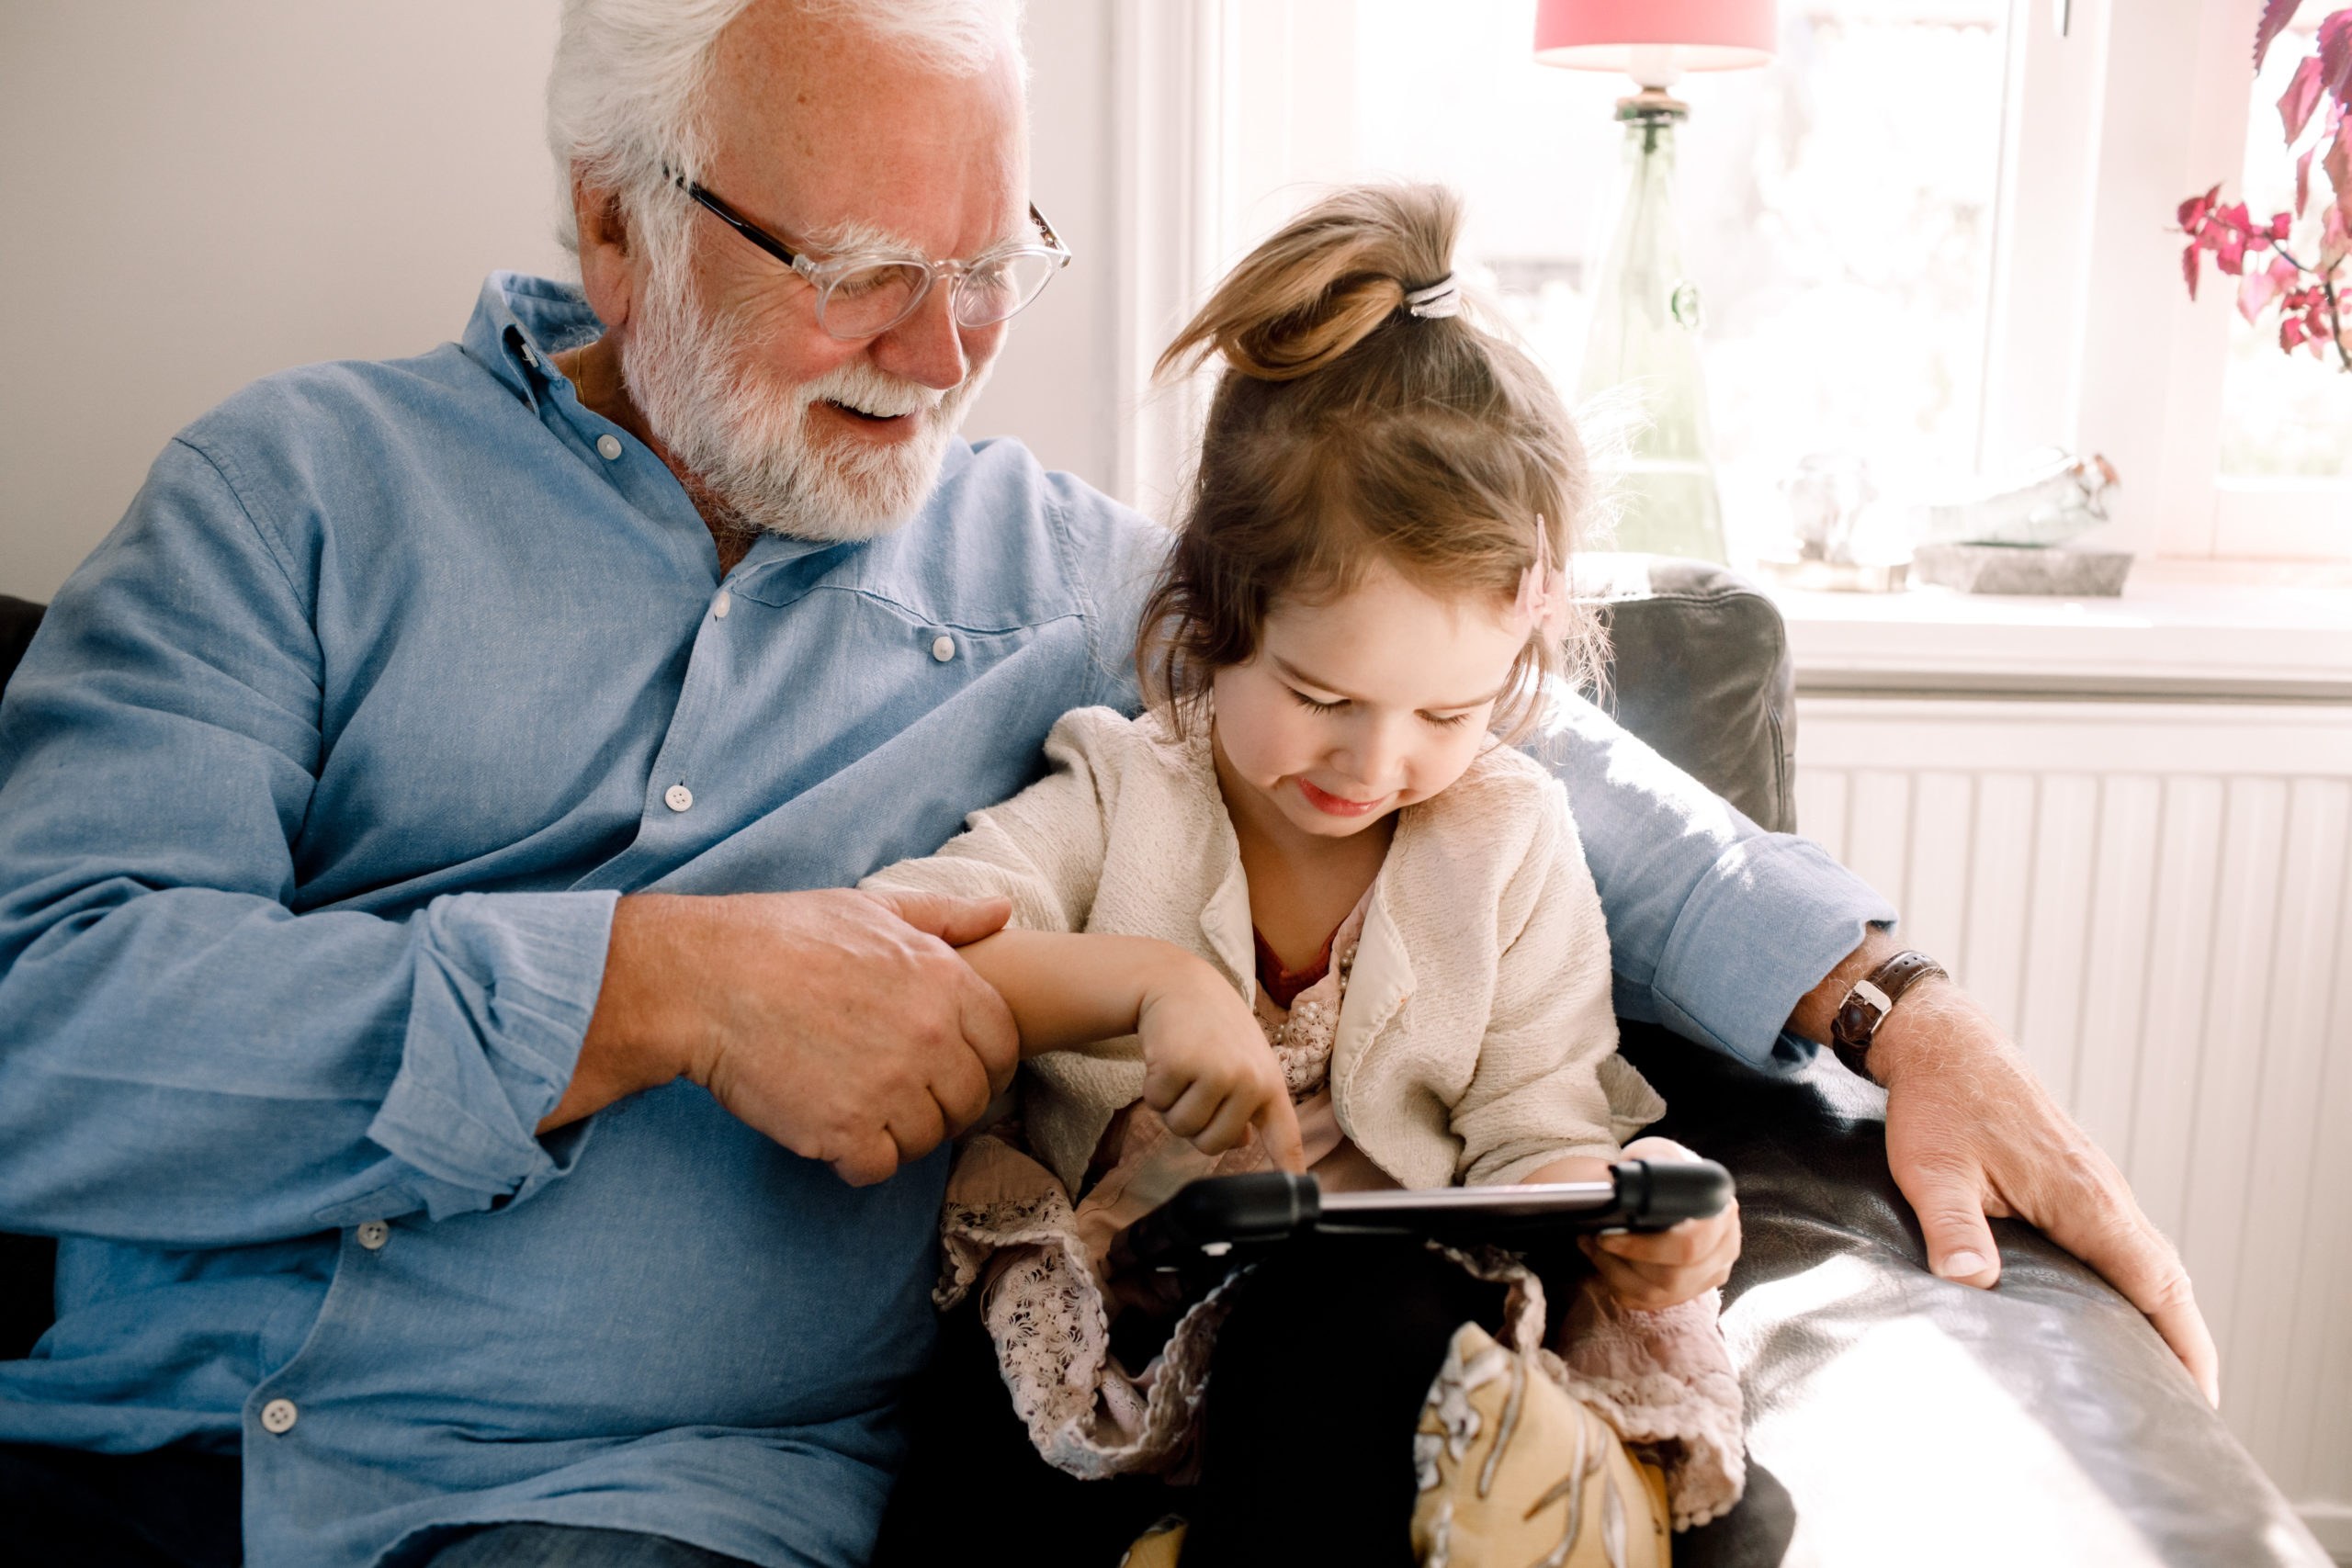 Bestefar sitter med et barnebarn i armkroken og de ser på en Ipad sammen